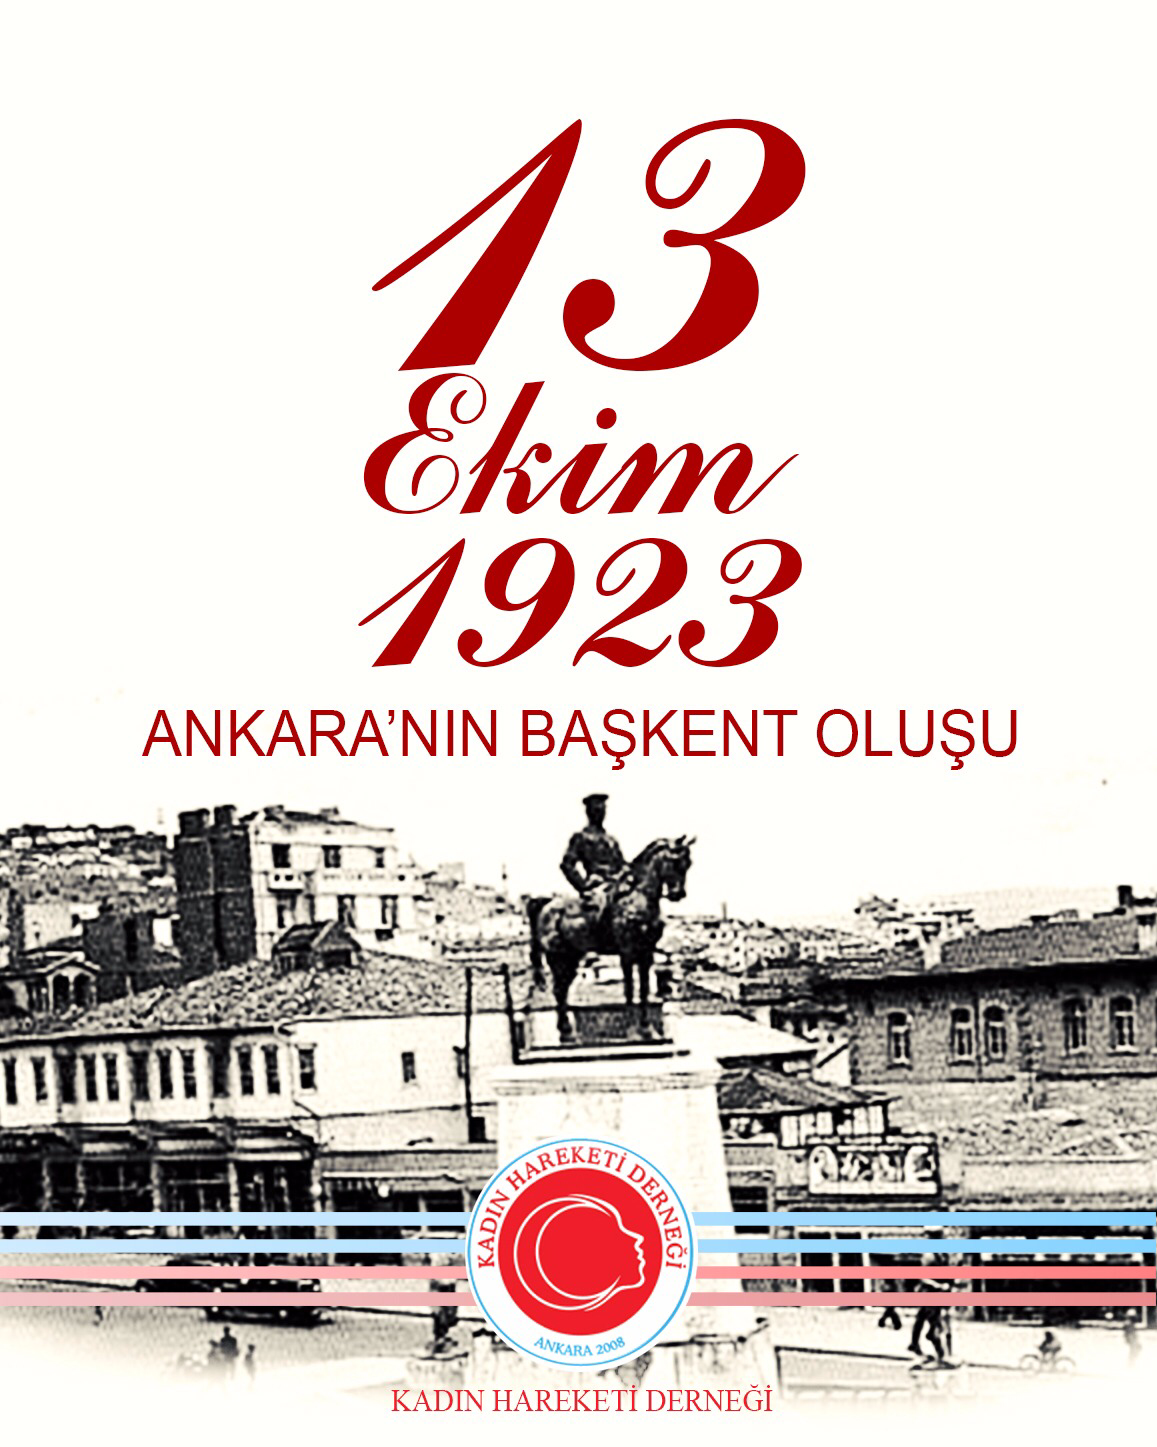 13 ekim Ankara'nın başkent Oluşu, Kadın Hareketi Derneği,